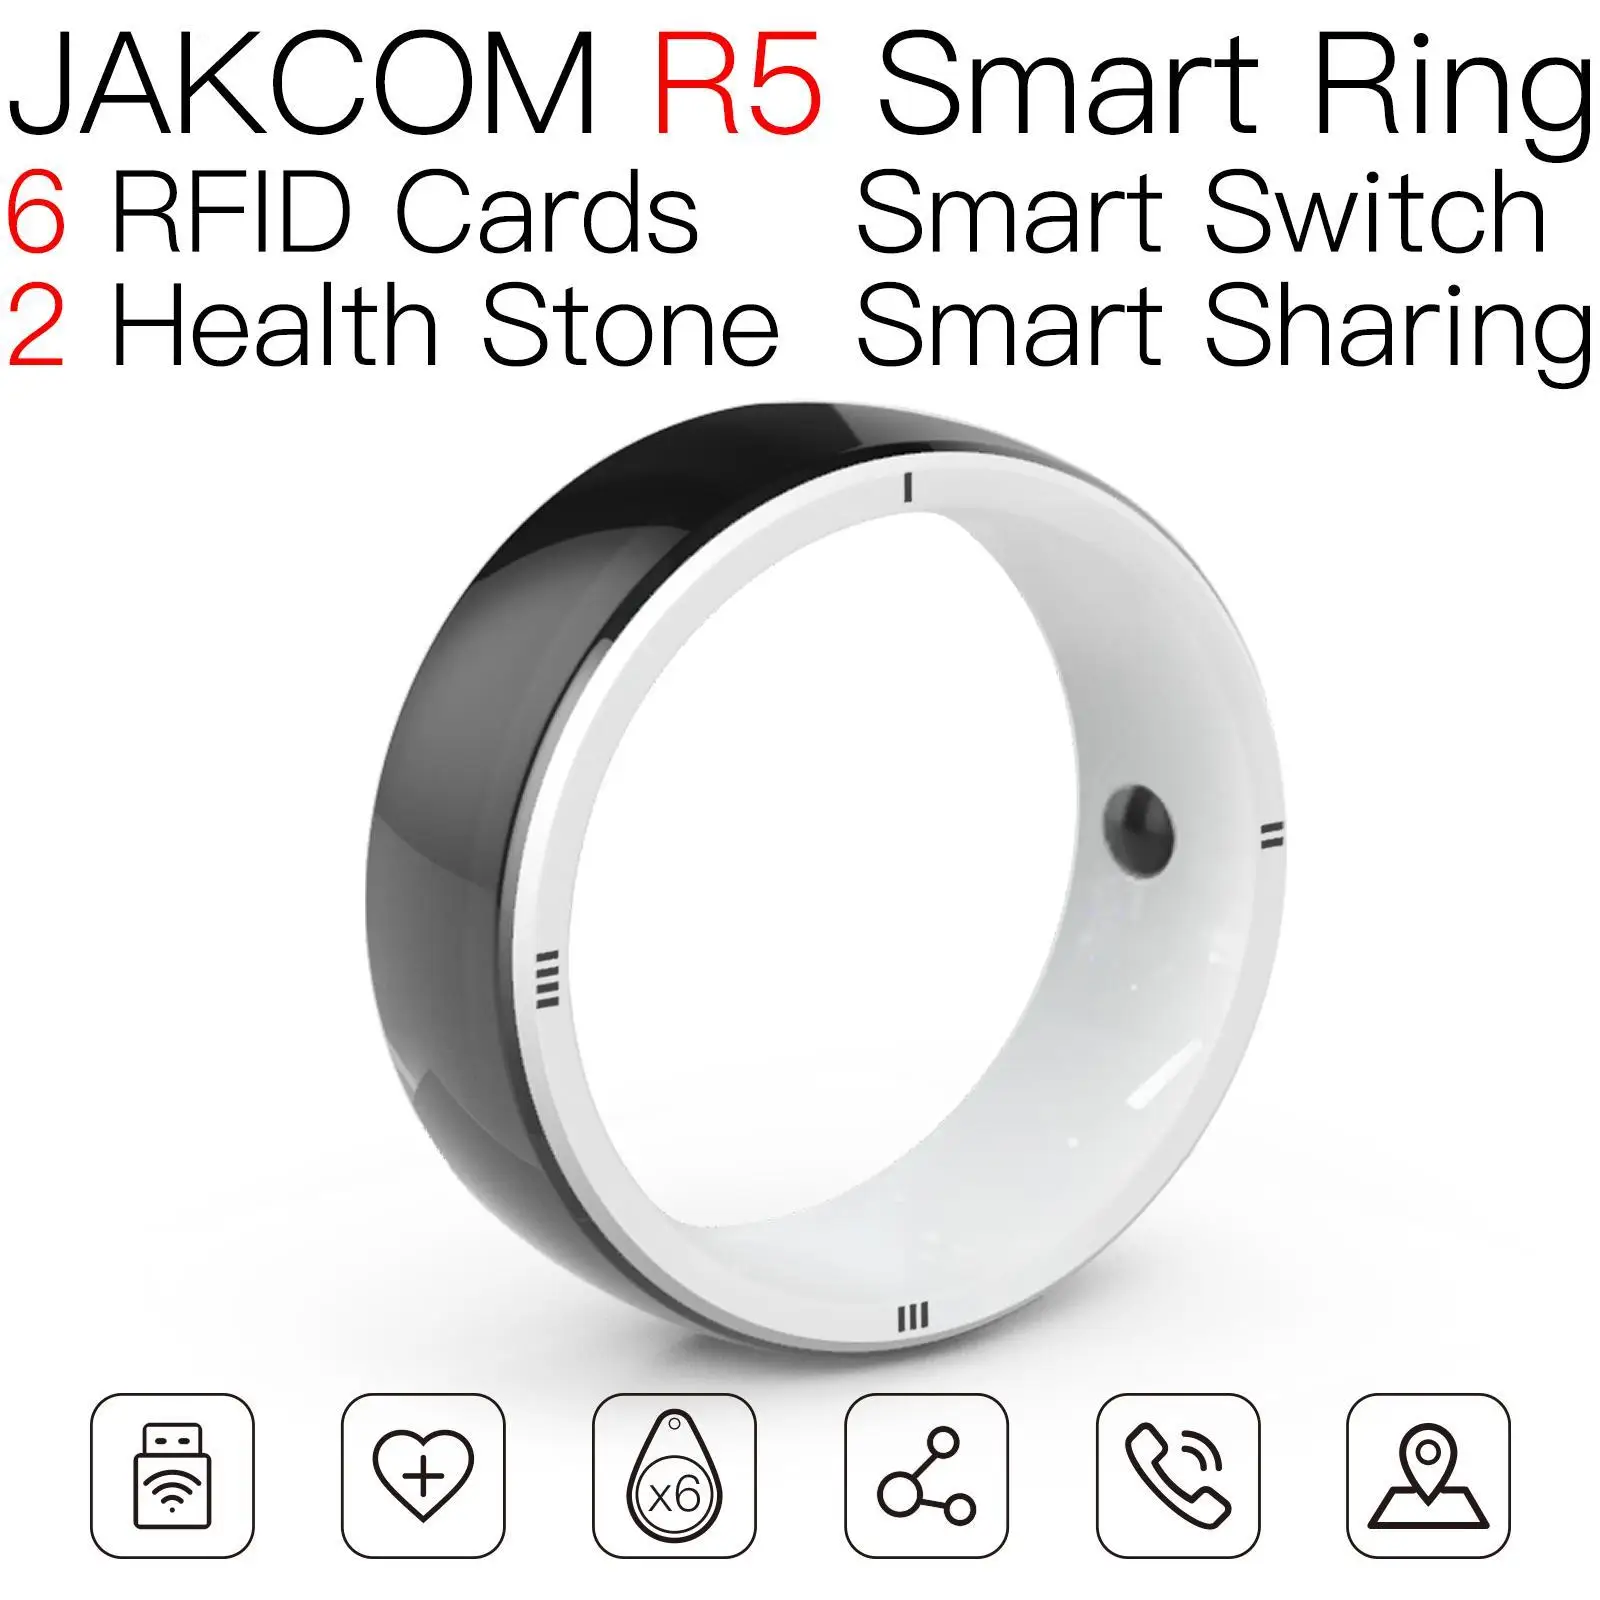 

Умное кольцо JAKCOM R5, лучший подарок, со складным бесщеточным Мотором, умная розетка, Wi-Fi, бытовая техника, часы fd68s, умные часы для мини-ПК